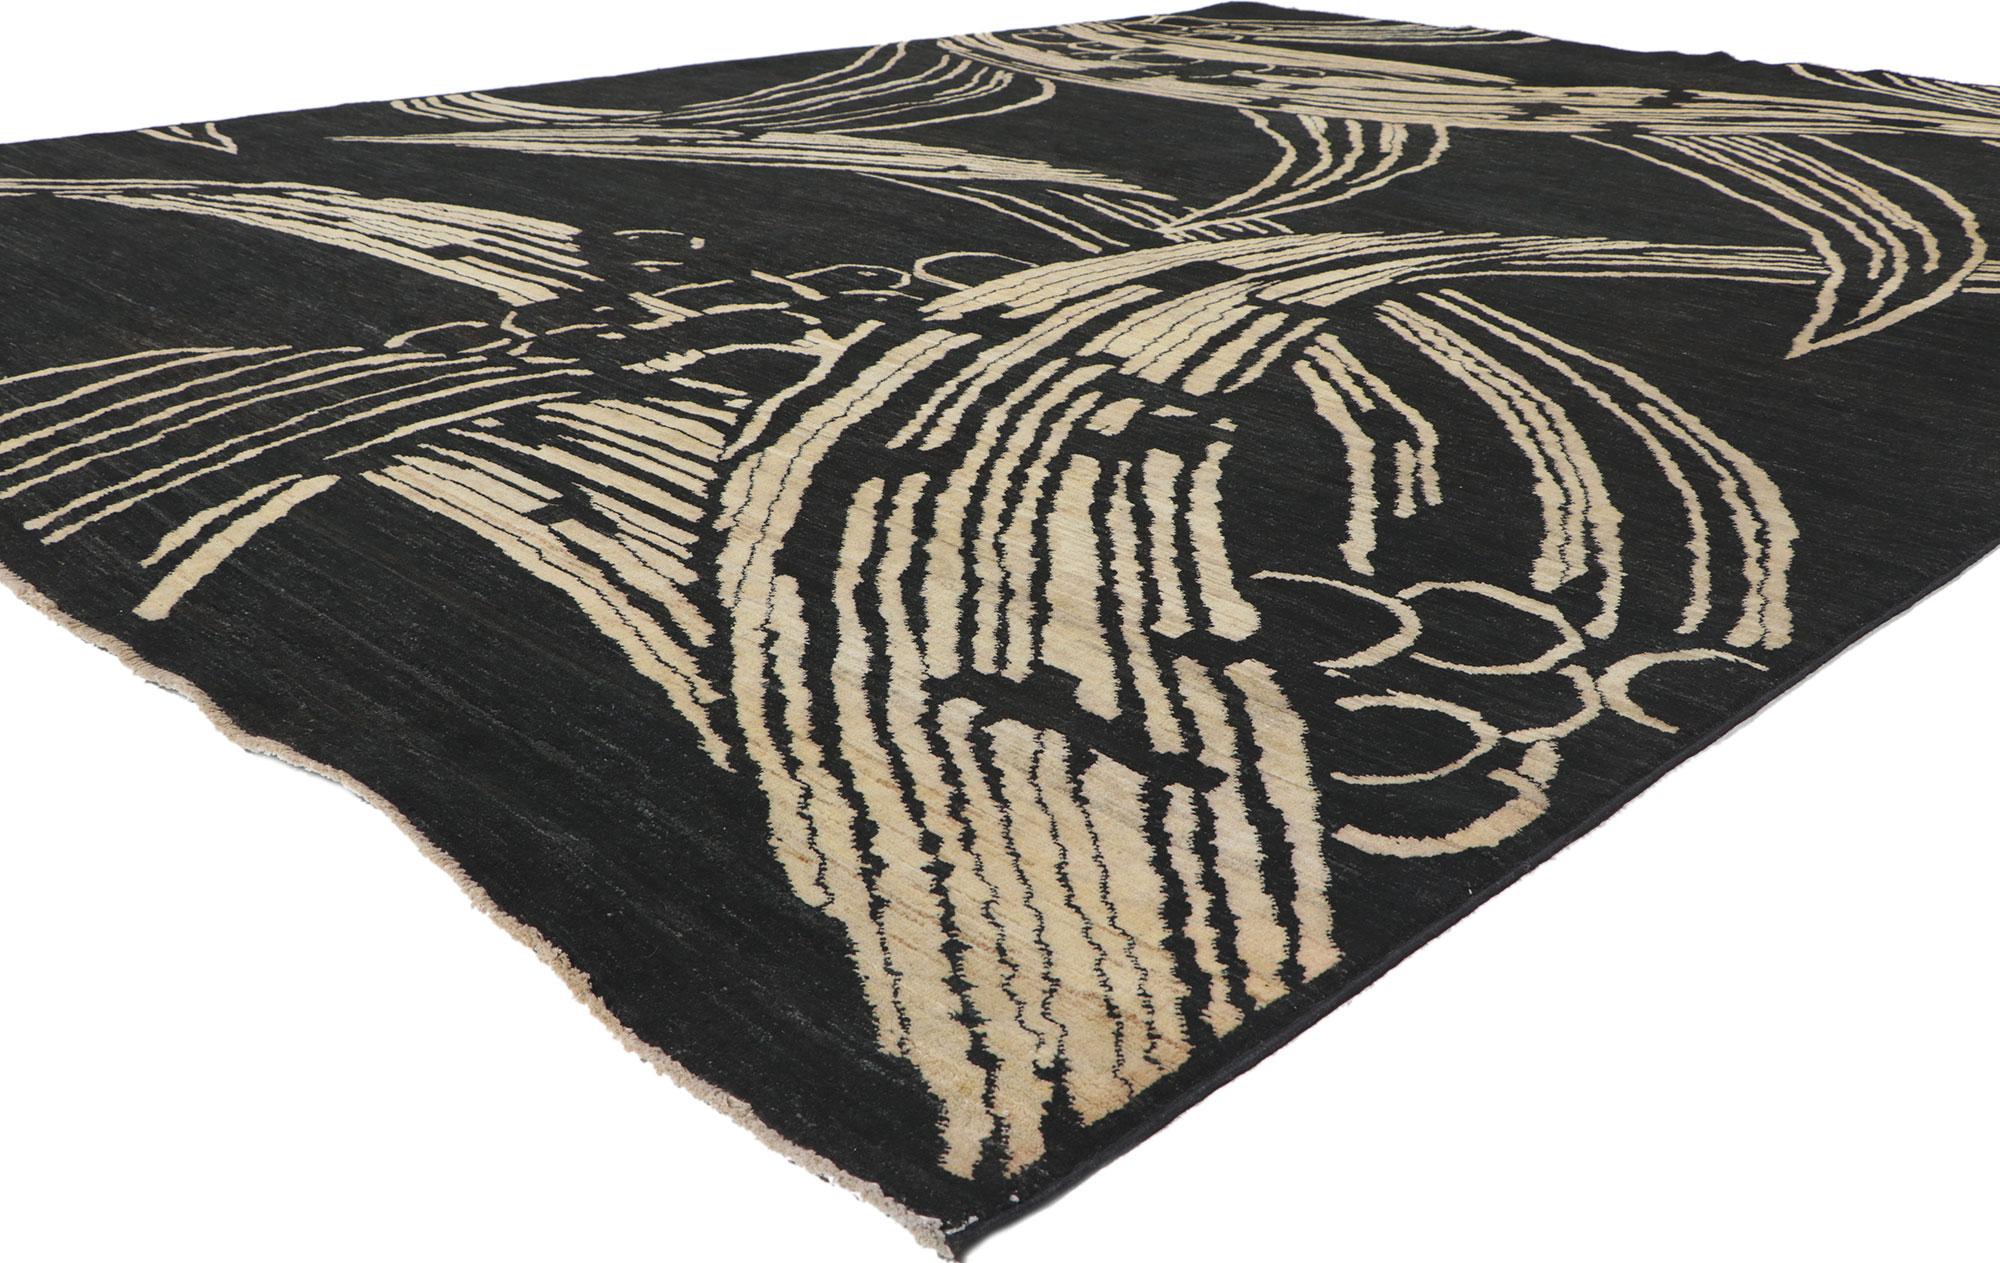 80750 Nueva Alfombra contemporánea de estilo moderno y diseño biofílico, 09'10 x 12'11. Con su estilo moderno, sus increíbles detalles y su textura, esta alfombra contemporánea de lana anudada a mano es una cautivadora visión de la belleza tejida.